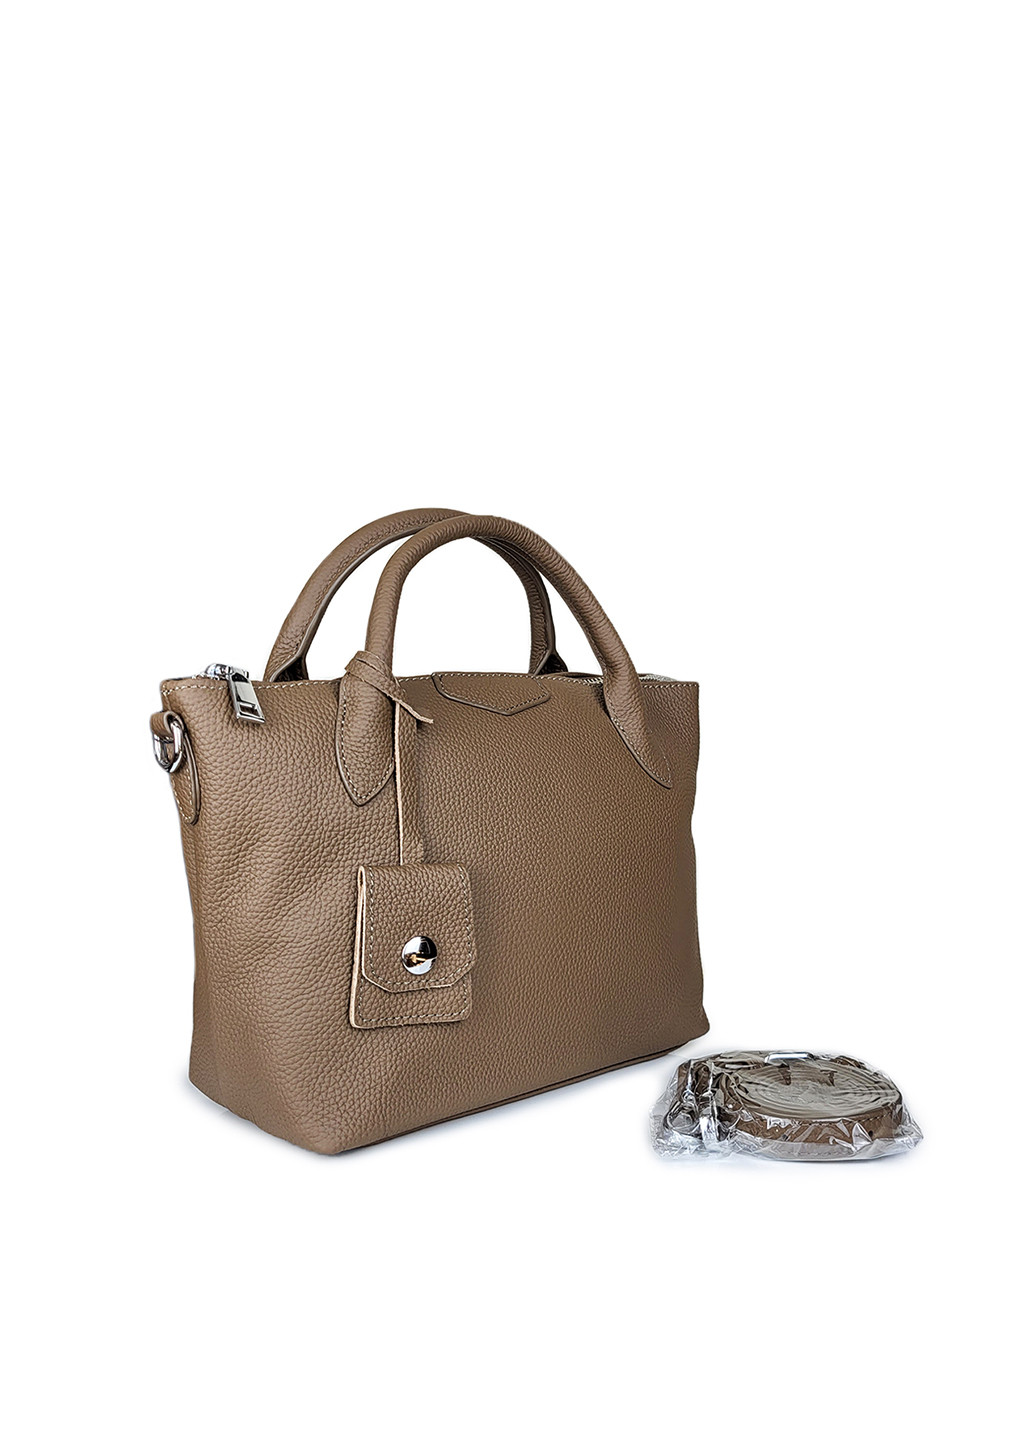 Шкіряна жіноча сумка середня коричнева,,7715 кор Fashion (276390288)